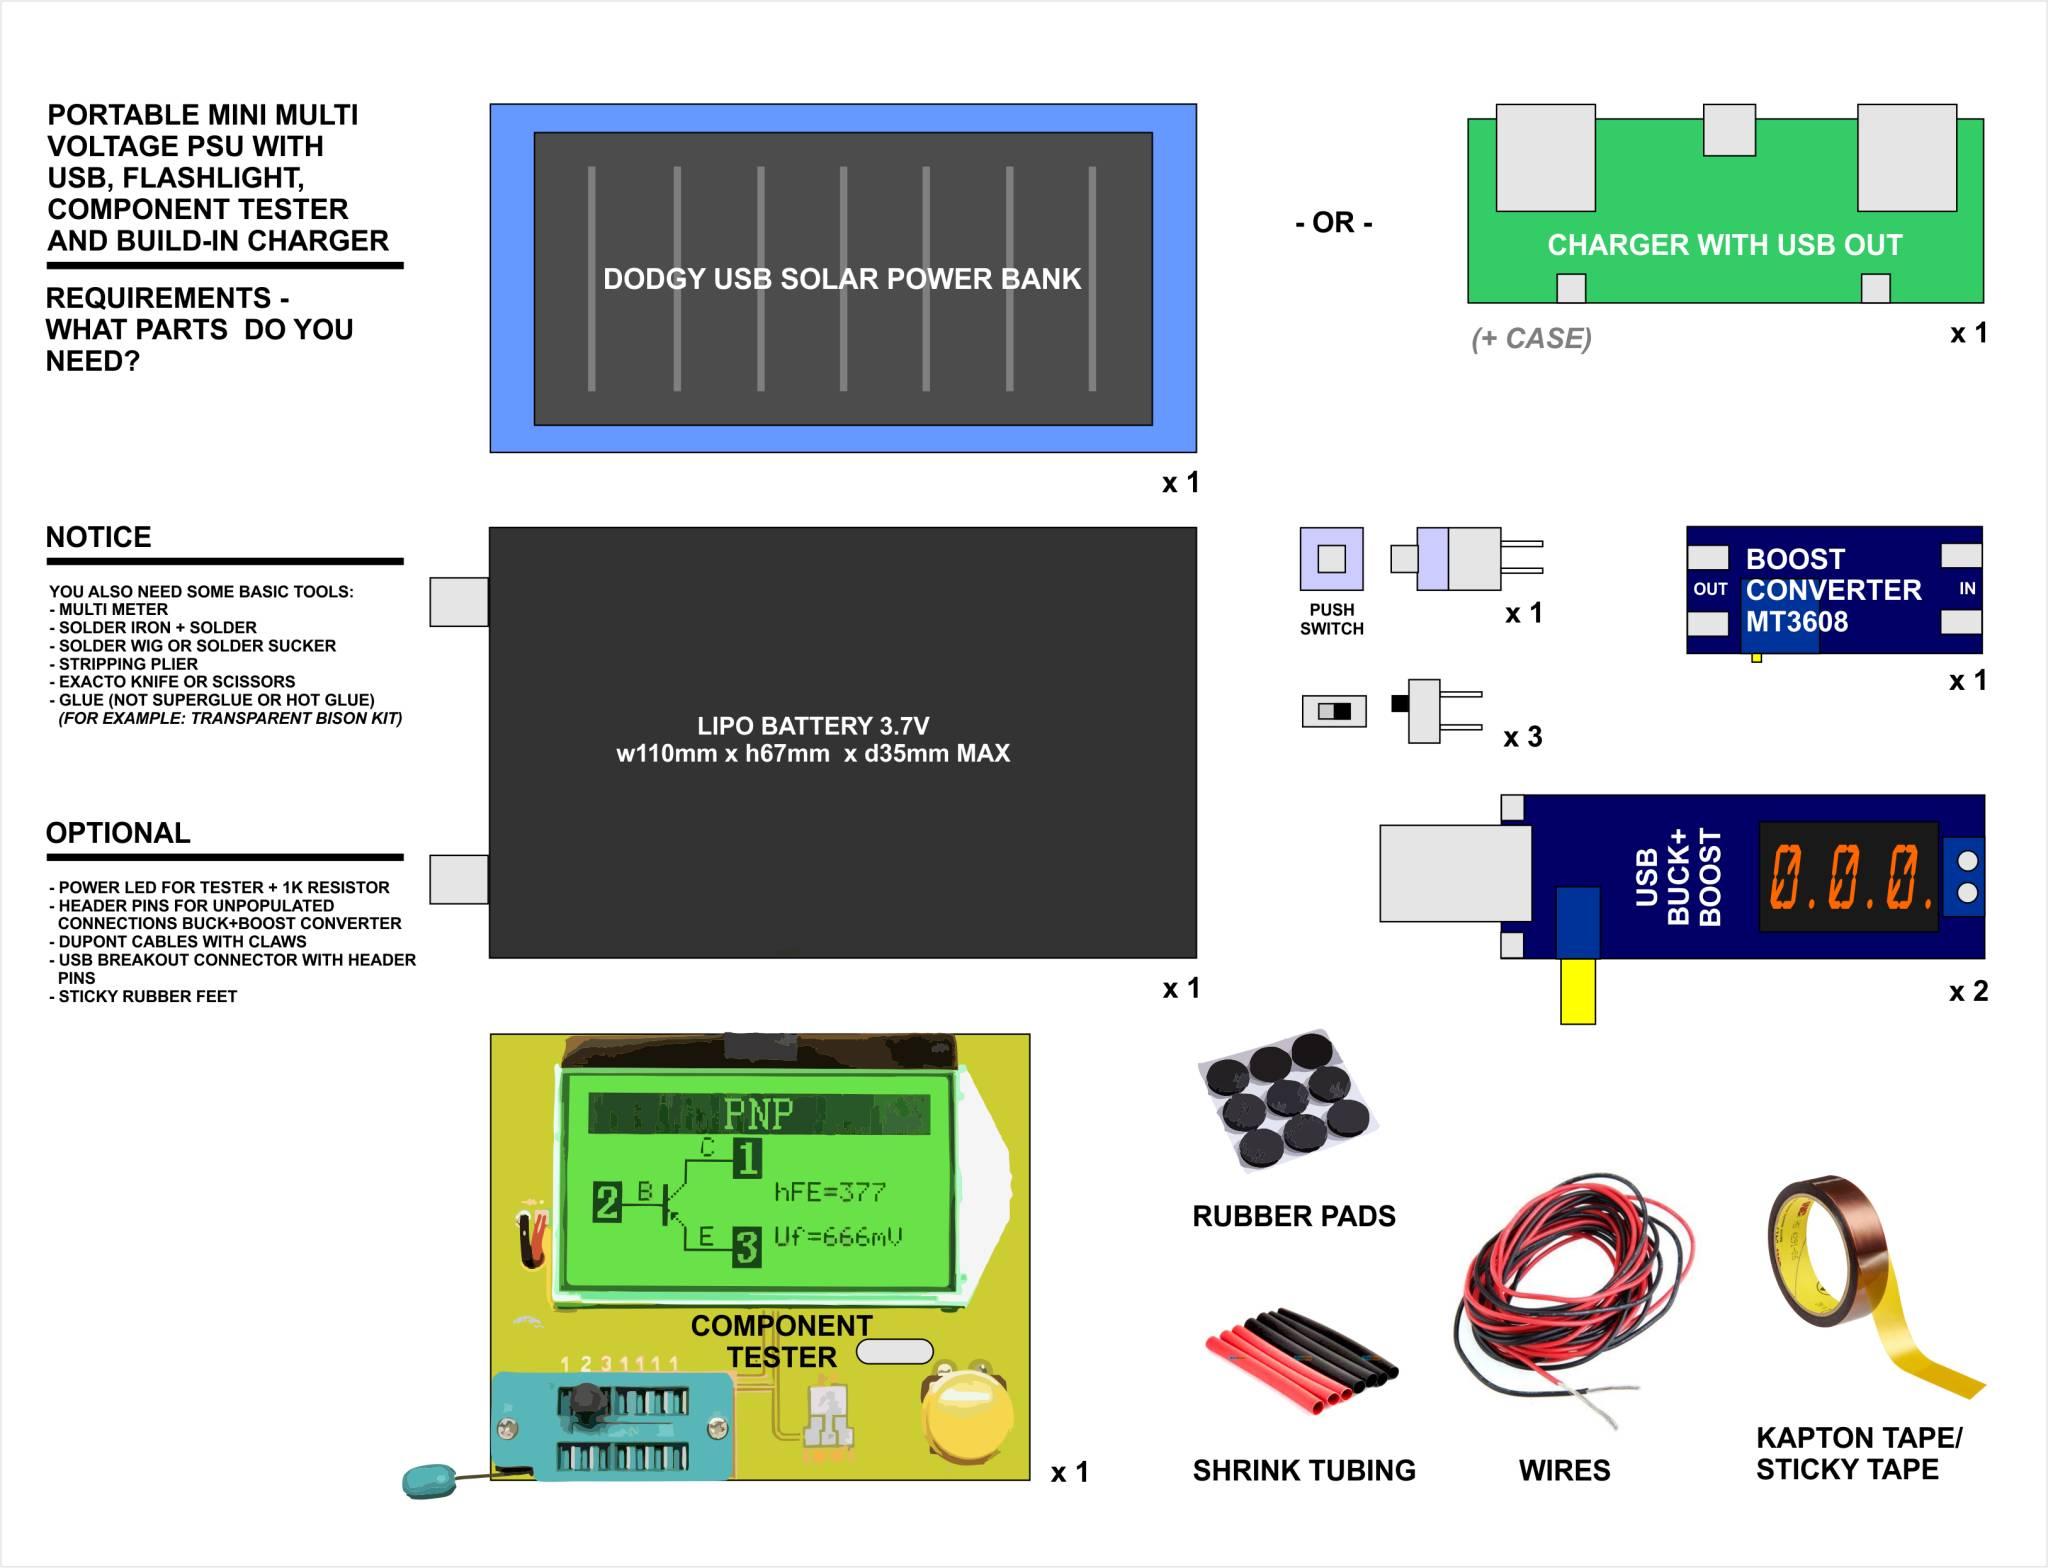 Portable Multi Voltage PSU - parts.jpg